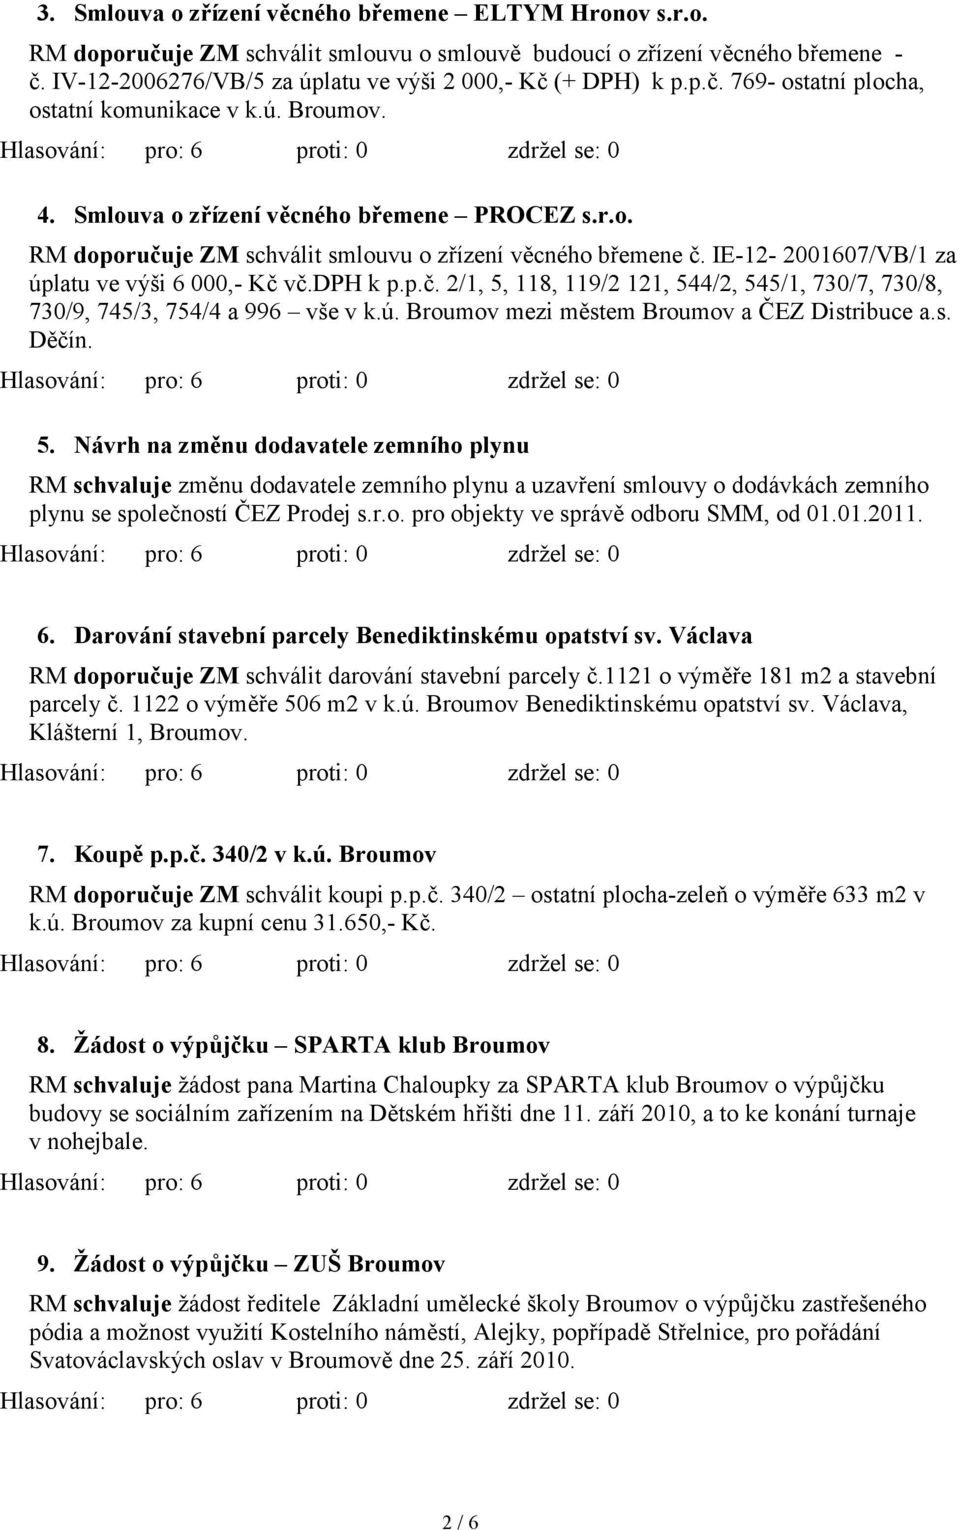 IE-12-2001607/VB/1 za úplatu ve výši 6 000,- Kč vč.dph k p.p.č. 2/1, 5, 118, 119/2 121, 544/2, 545/1, 730/7, 730/8, 730/9, 745/3, 754/4 a 996 vše v k.ú. Broumov mezi městem Broumov a ČEZ Distribuce a.